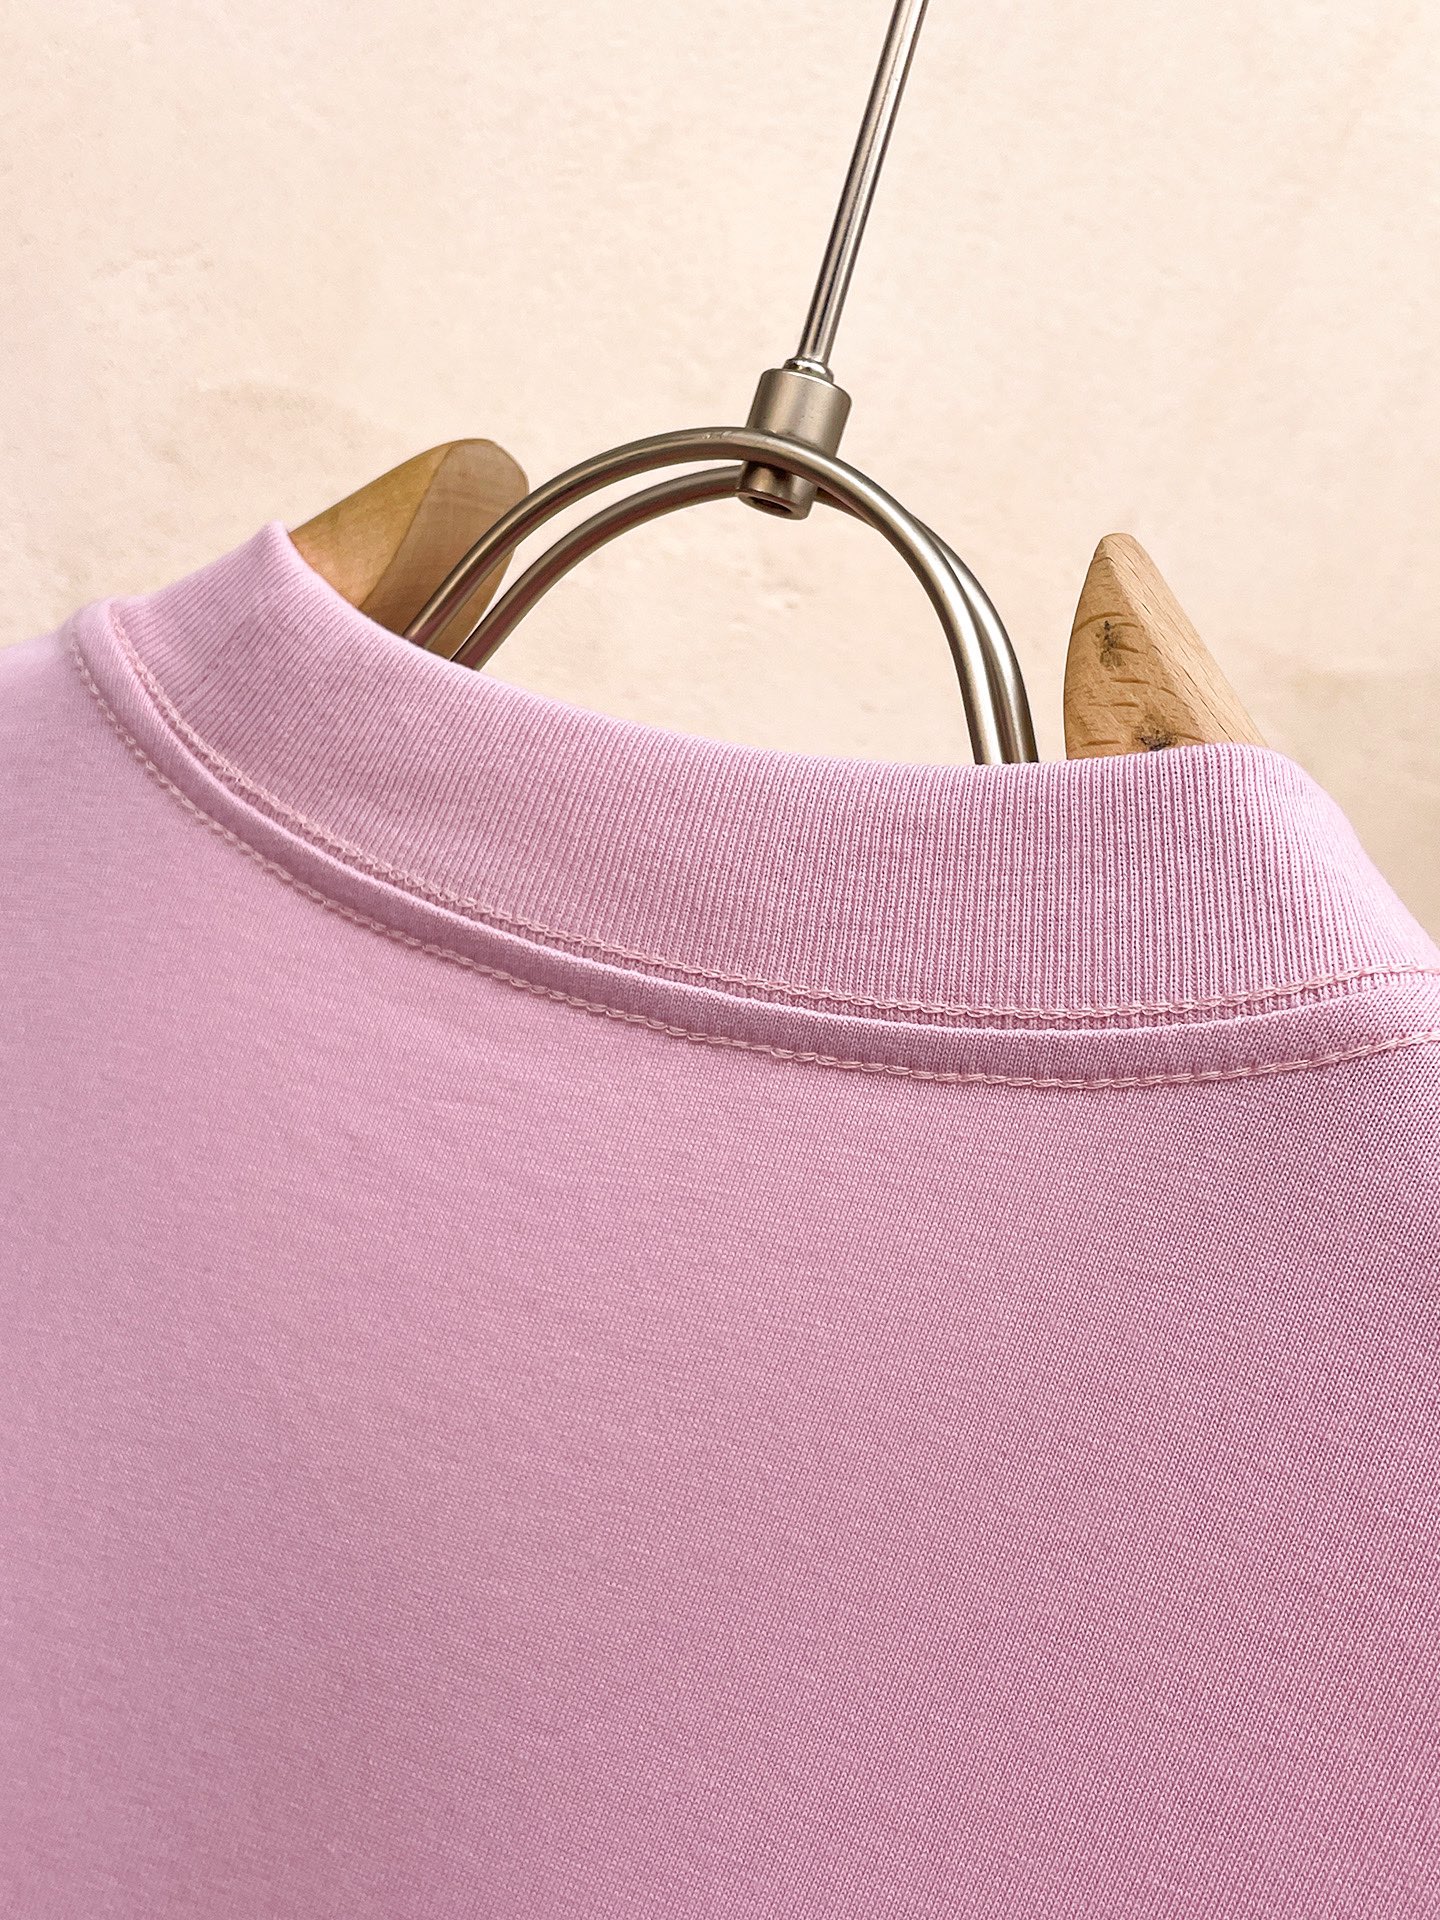 prada の t シャツ激安通販 短袖 ゆったり 純綿 トップス プリント 柔らかい シンプル ピンク_8